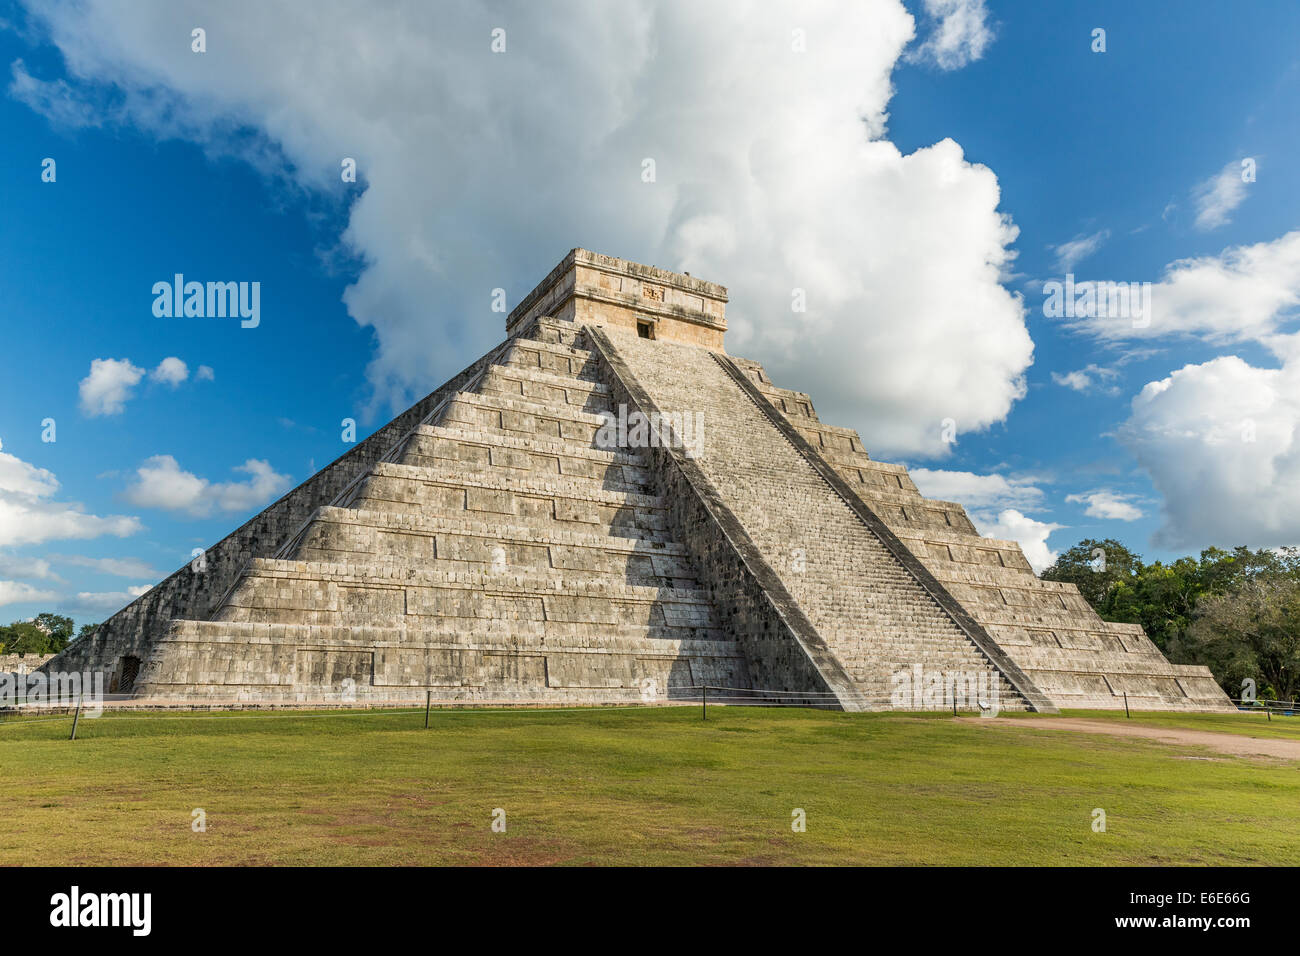 Pyramid of Kukulkan Chichen Itza, Mexico Stock Photo